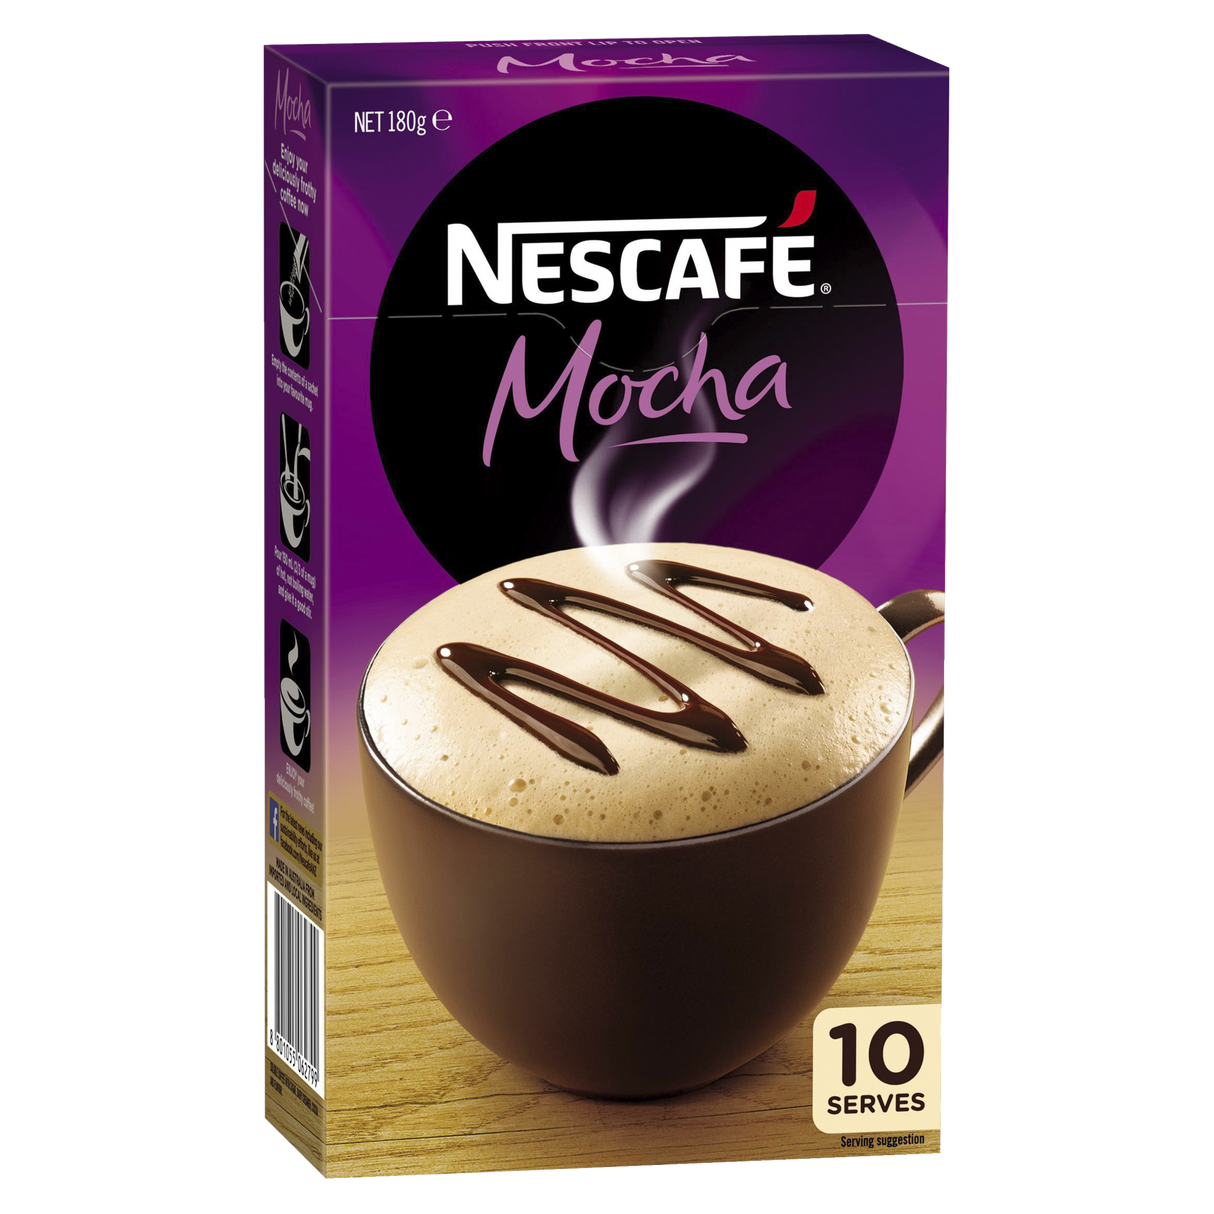 Nescafe Mocha 180g